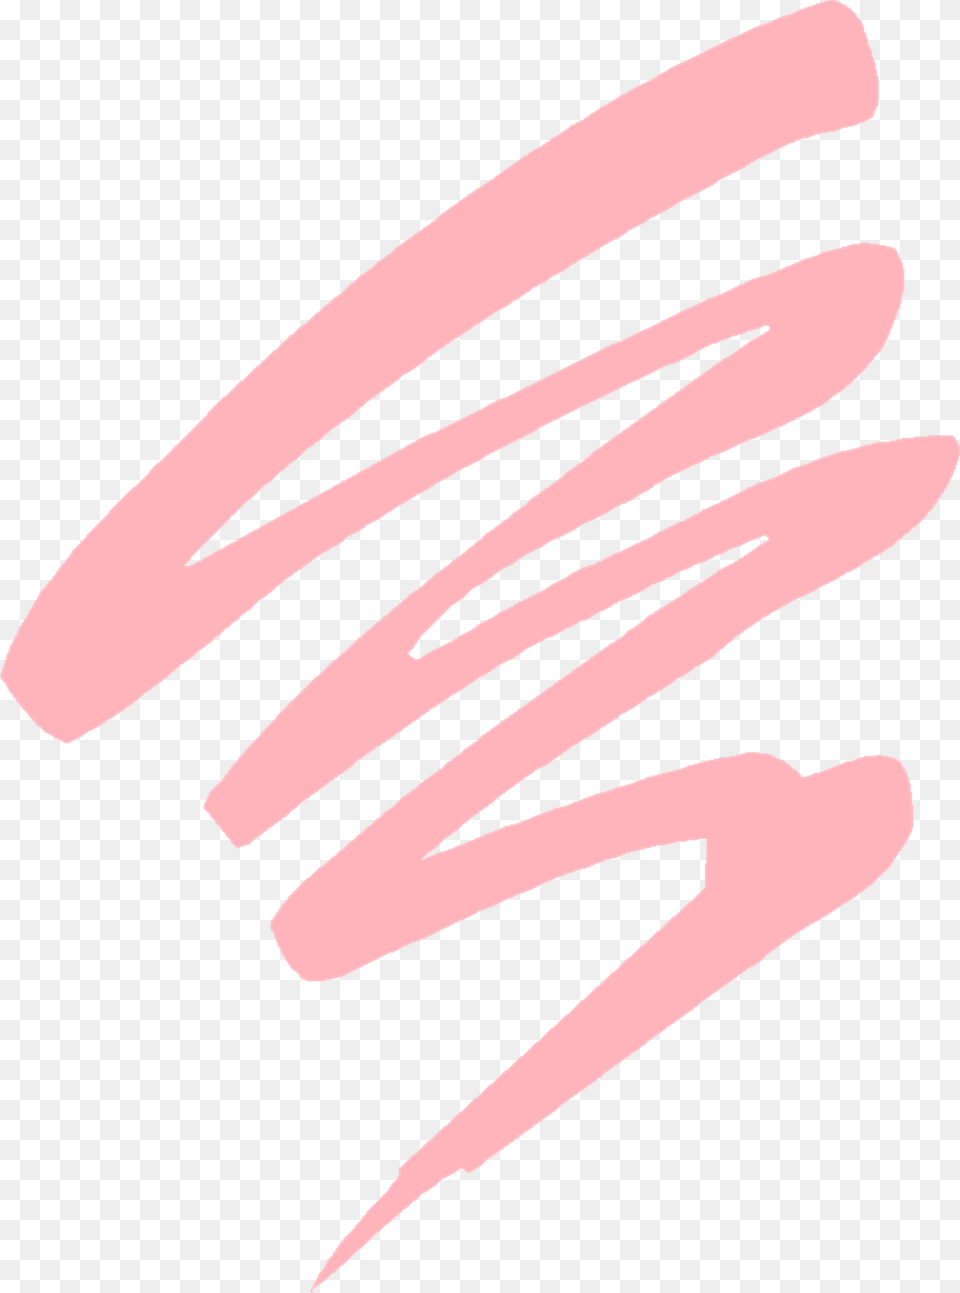 Pink Splash Lines Free Image On Pixabay Light Pink Design, Spiral, Coil, Animal, Shark Png